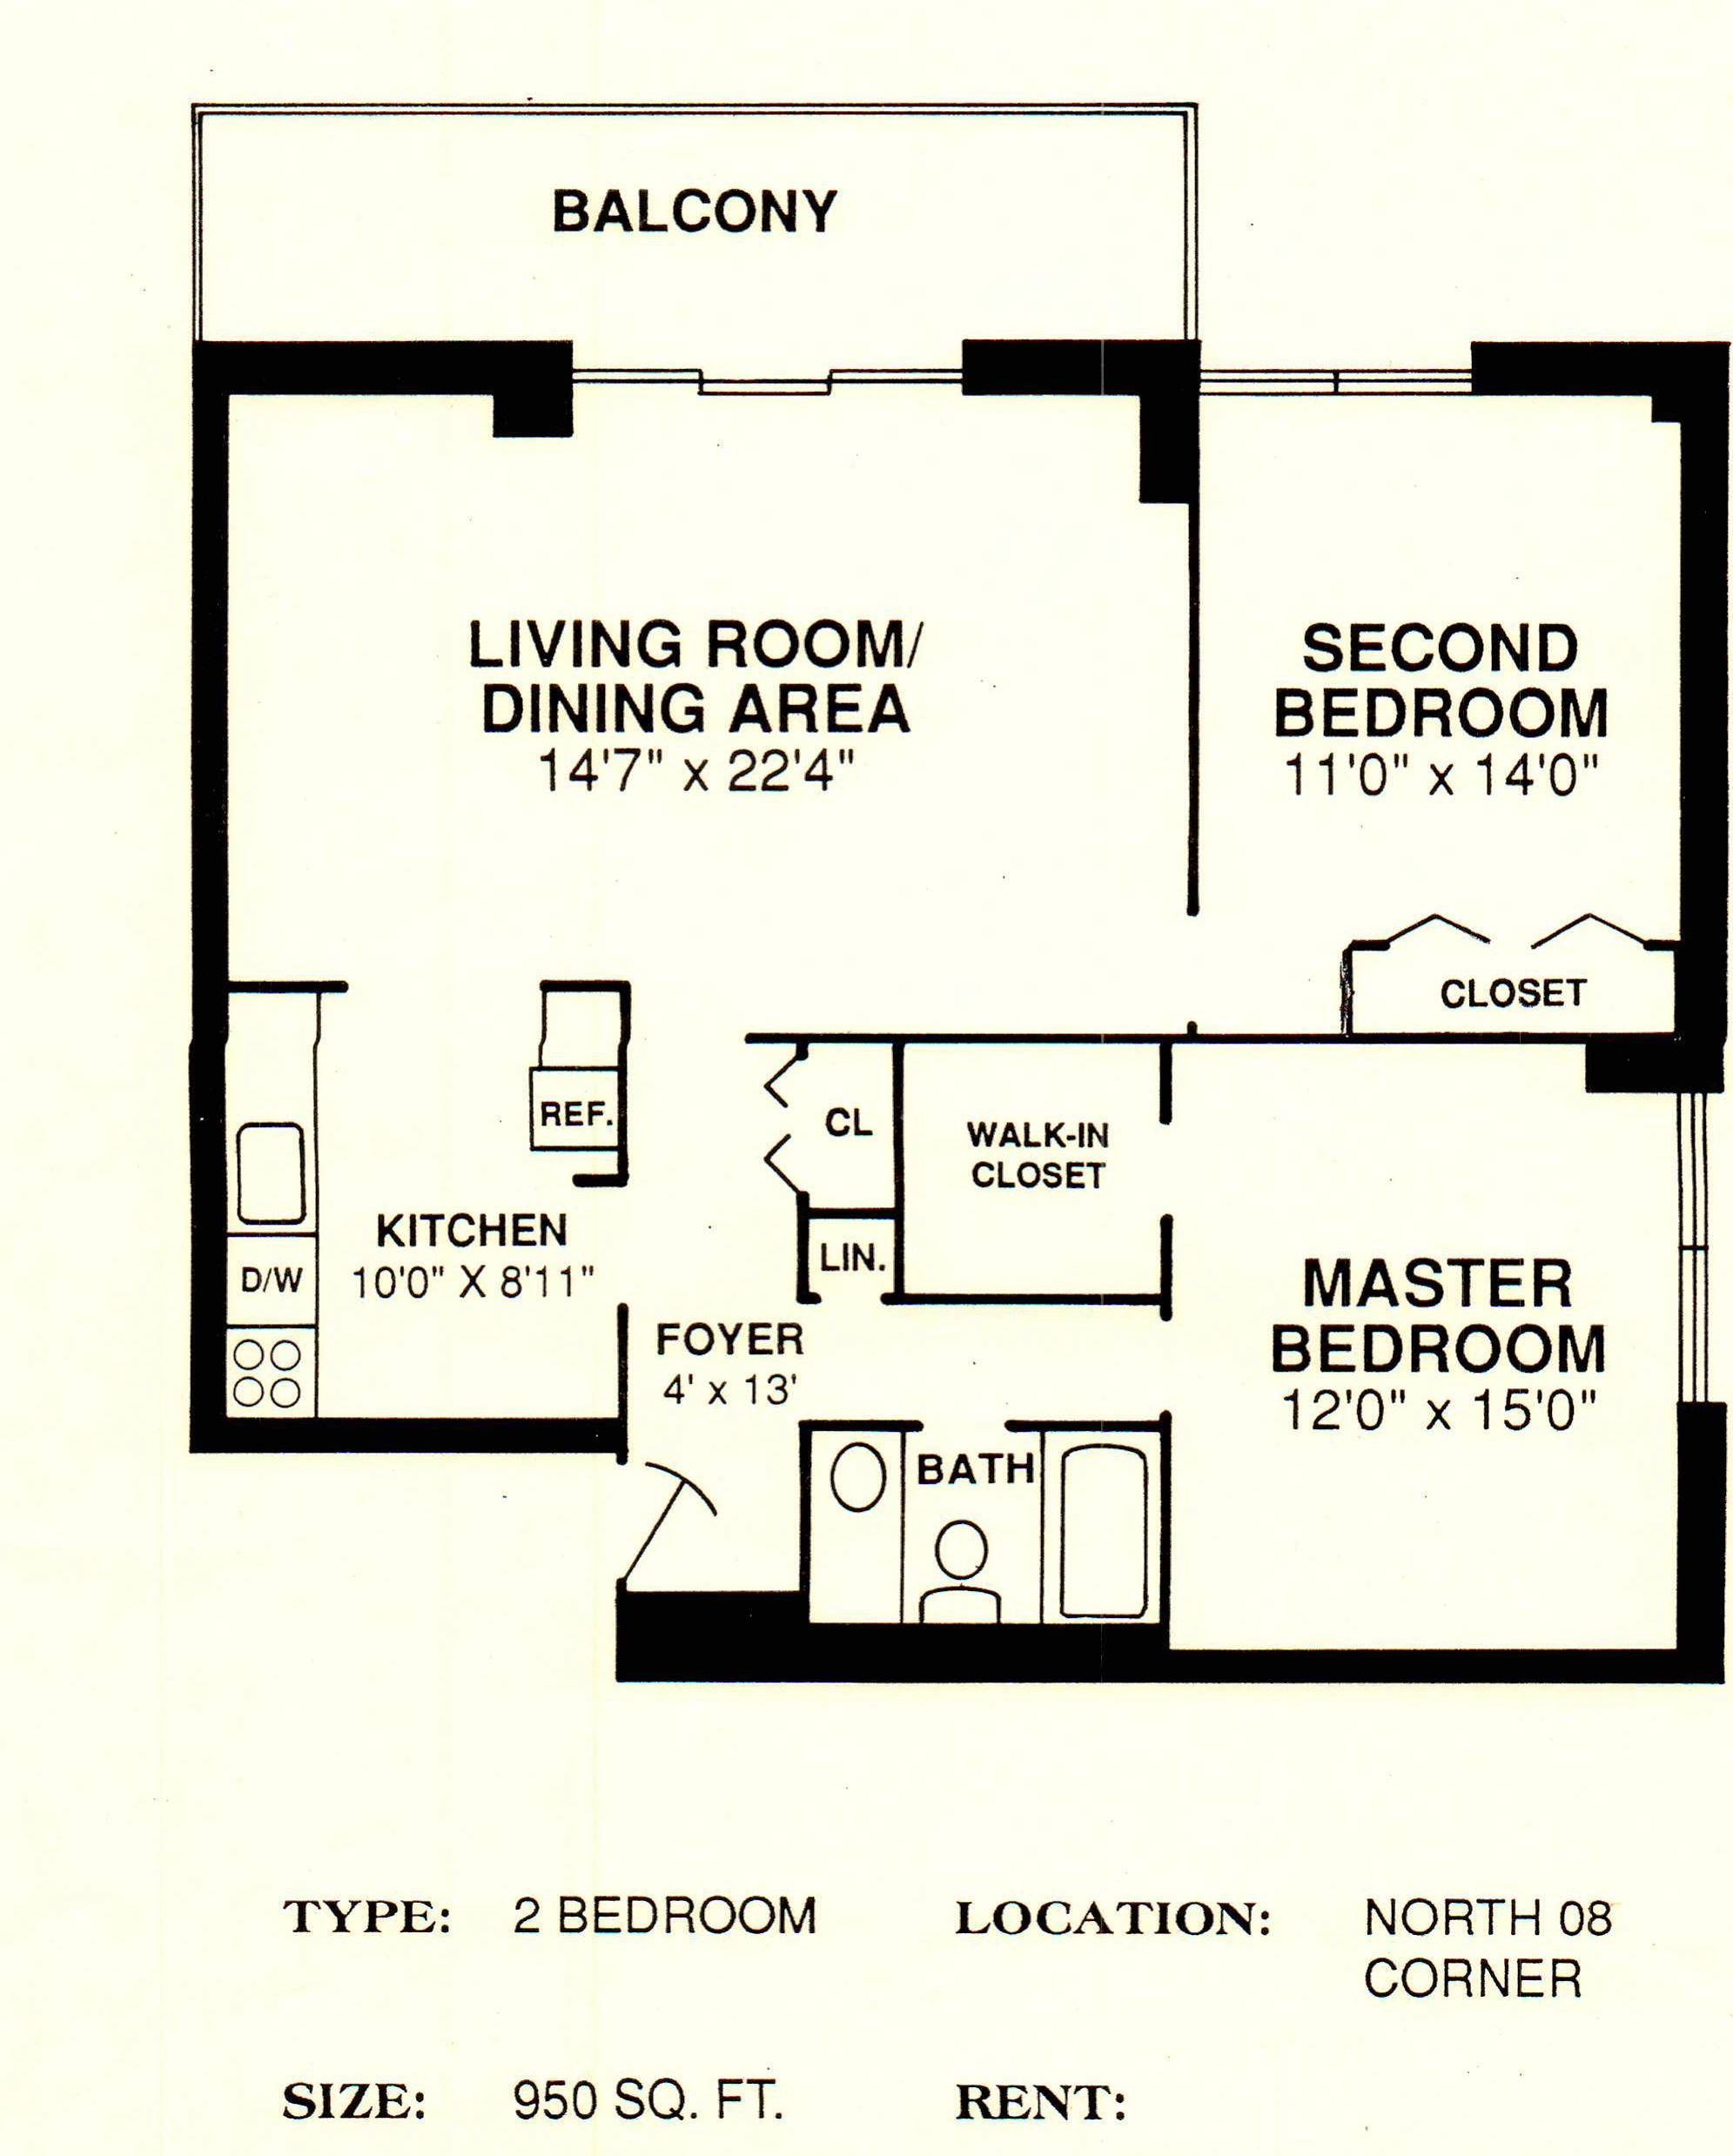 North 08 corner 950 sq. ft. 2 bedroom/1bathroom Closet